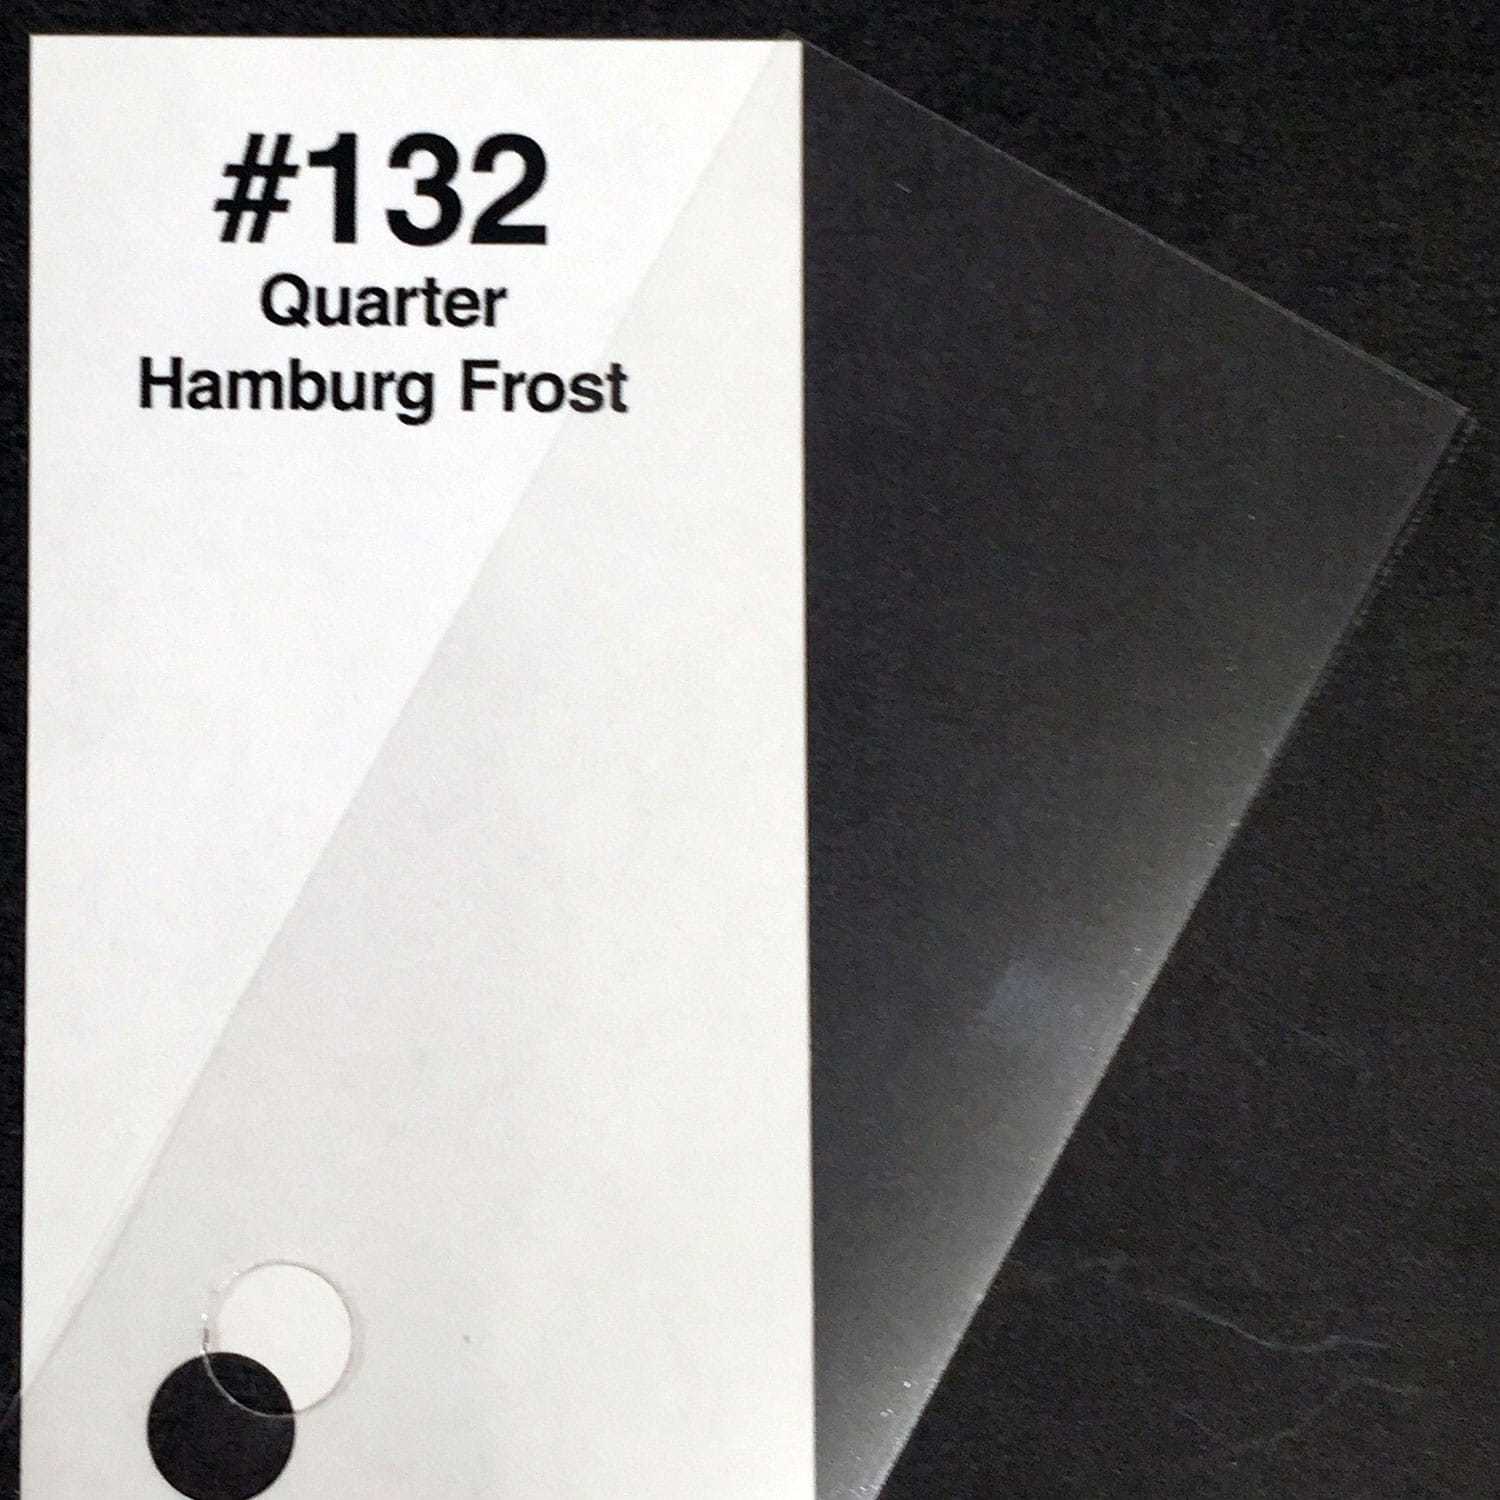 Rosco #132 Quarter Hamburg Frost